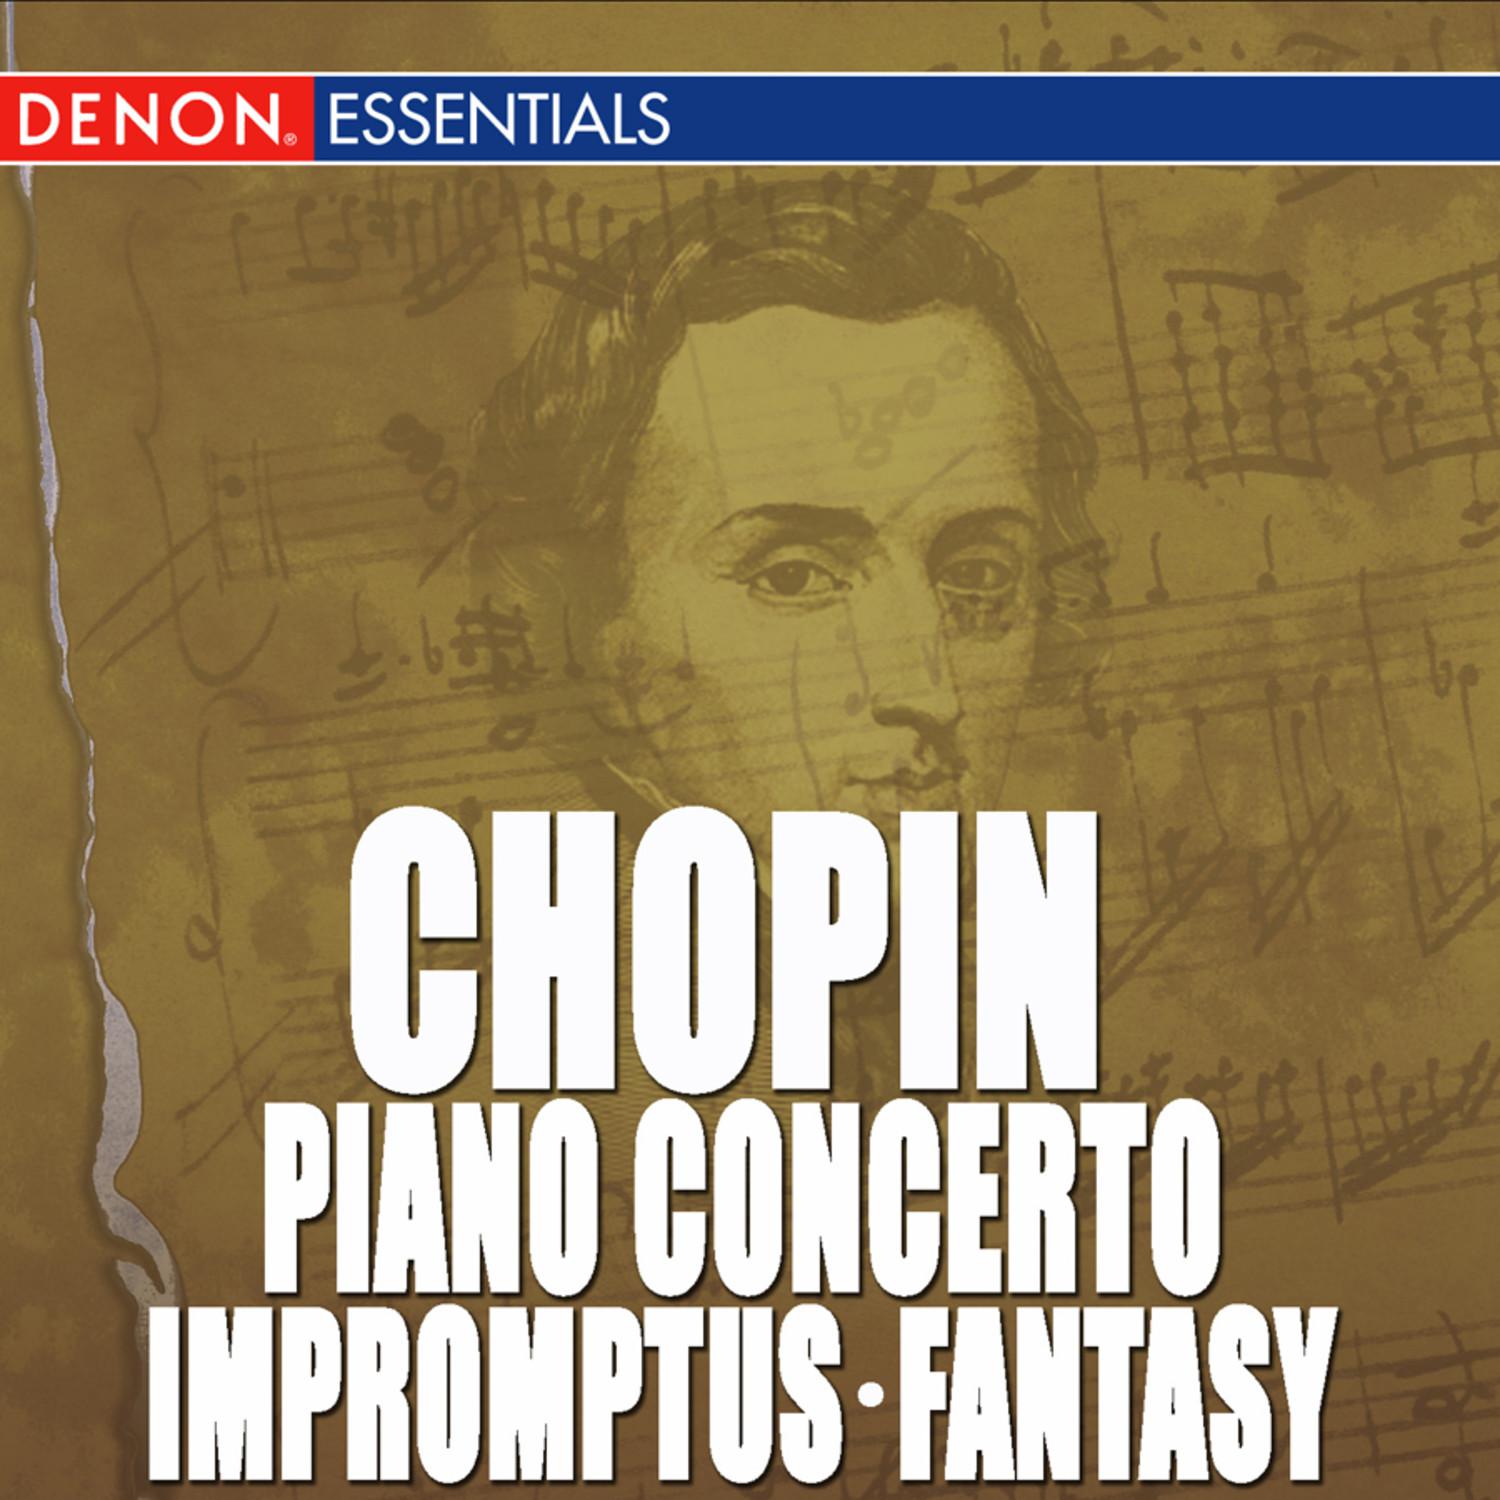 Chopin: Piano Concerto No. 1 - Impromptus - Fantasy, Op. 49